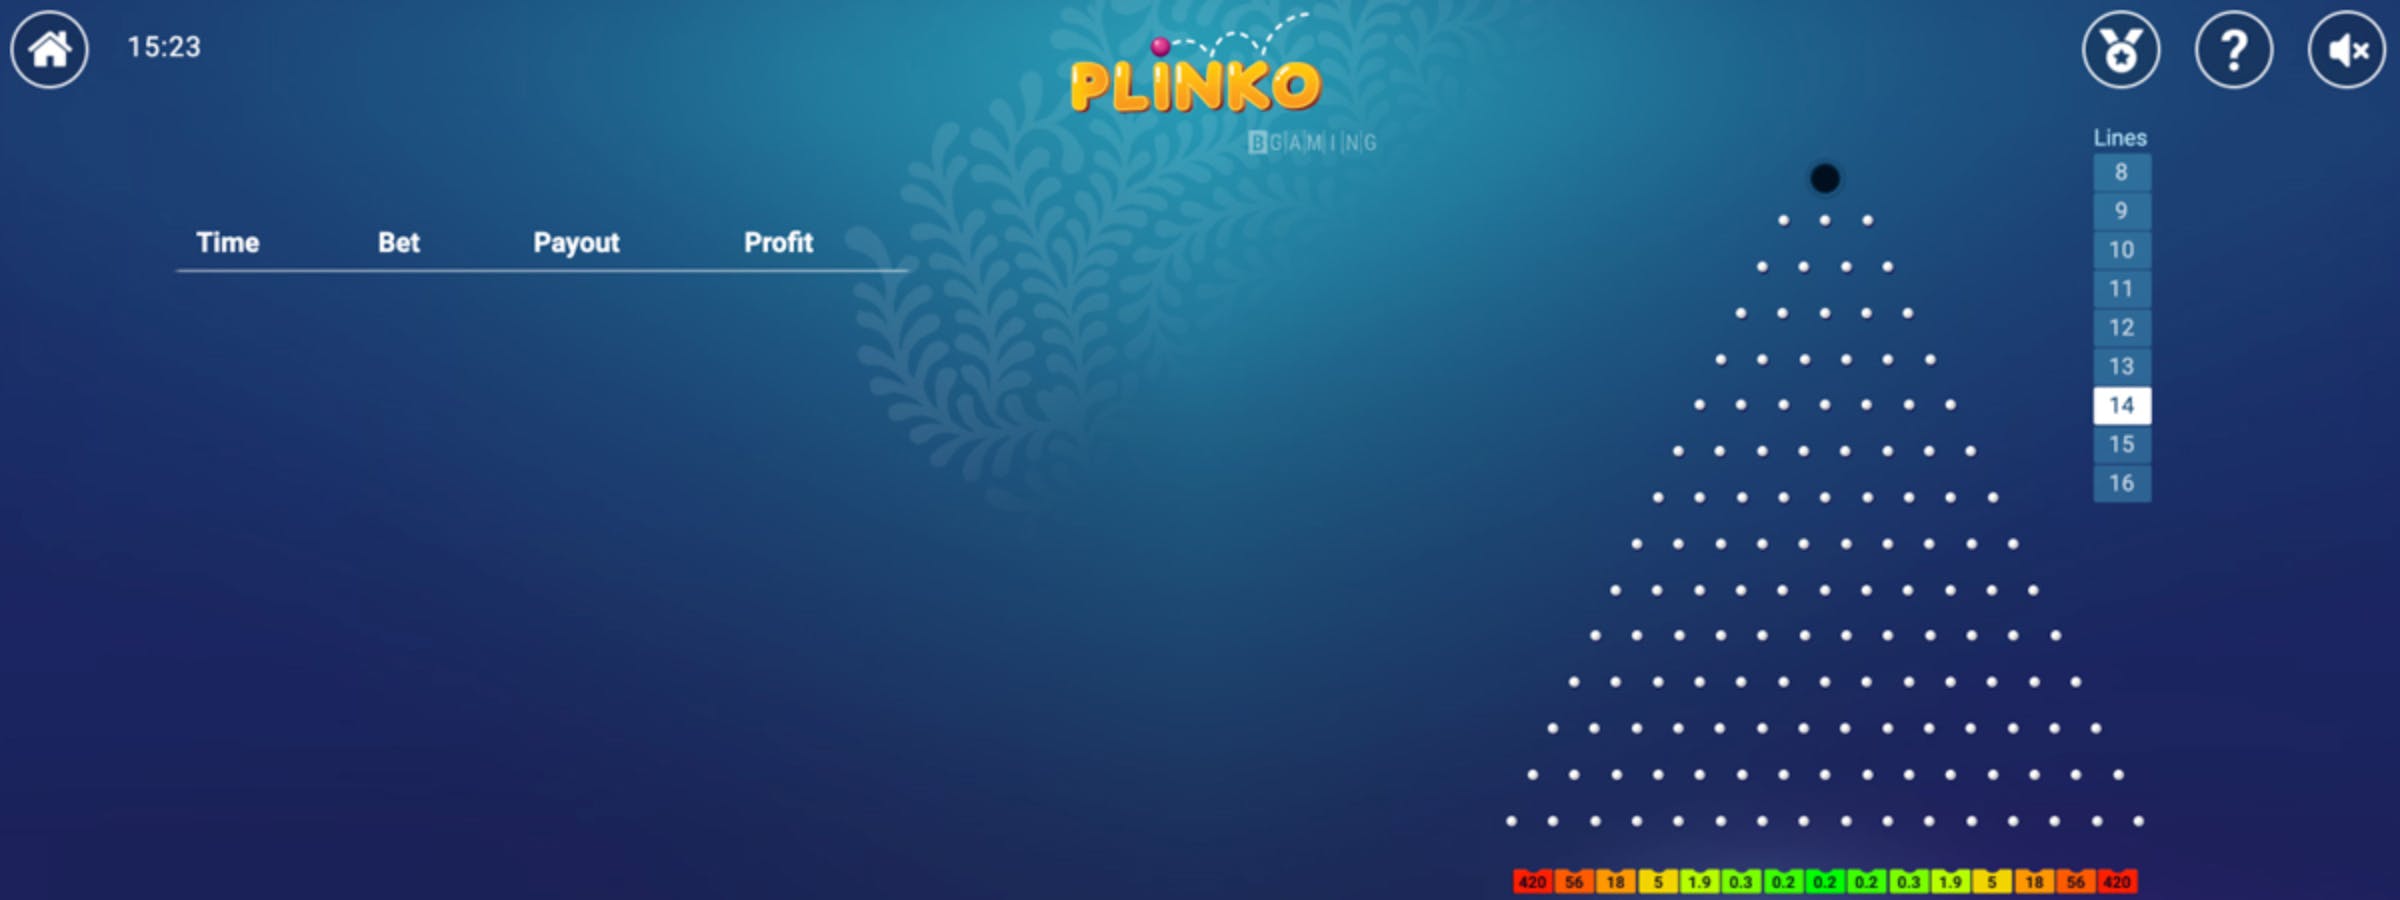 Le meilleur guide de Plinko : ce que vous devez savoir pour gagner